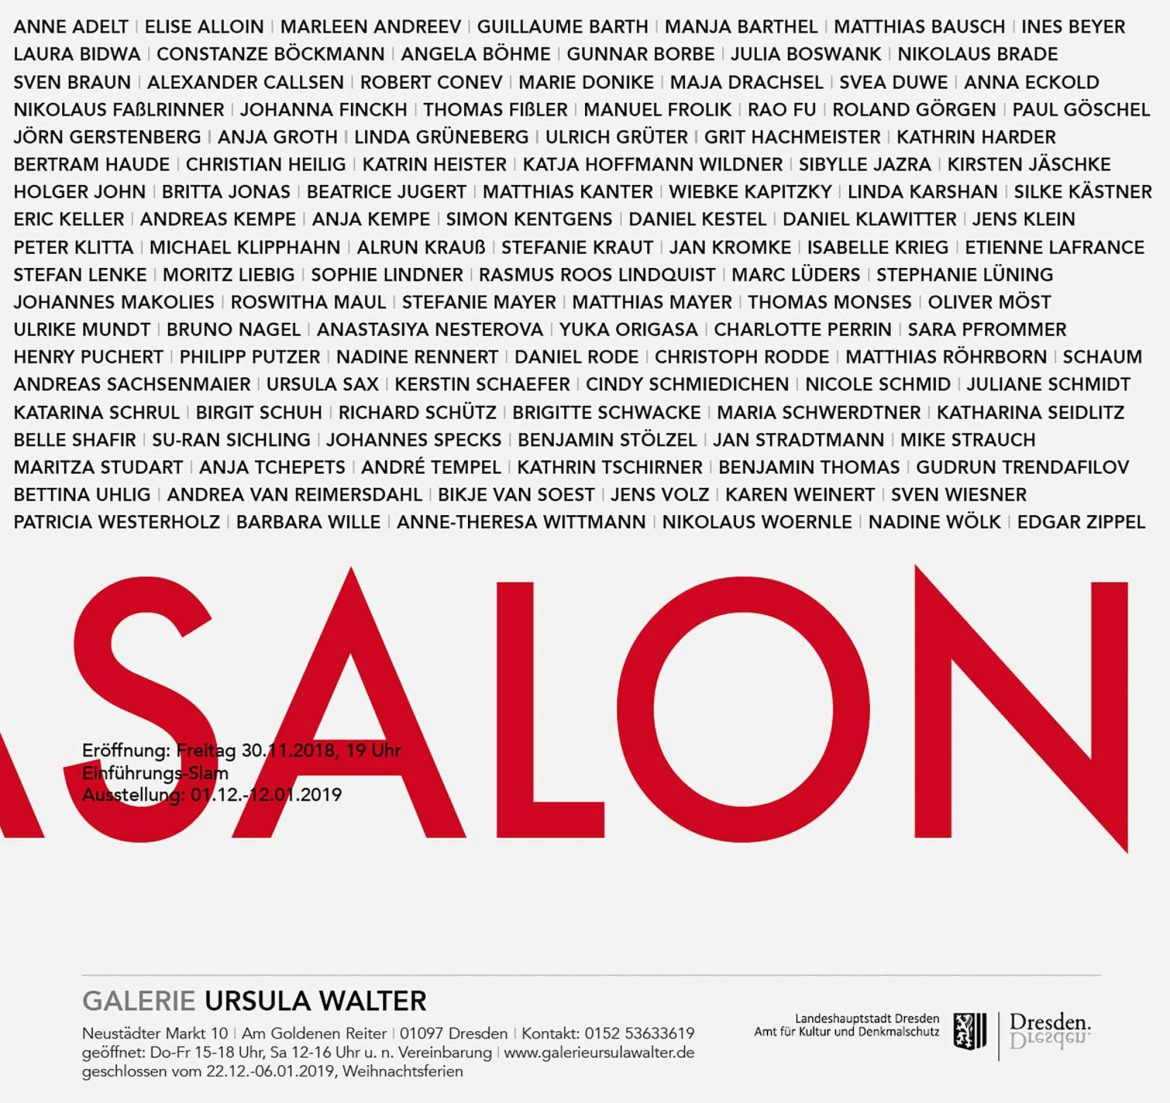 Ursulasalon, Galerie Ursula Walther, 2018